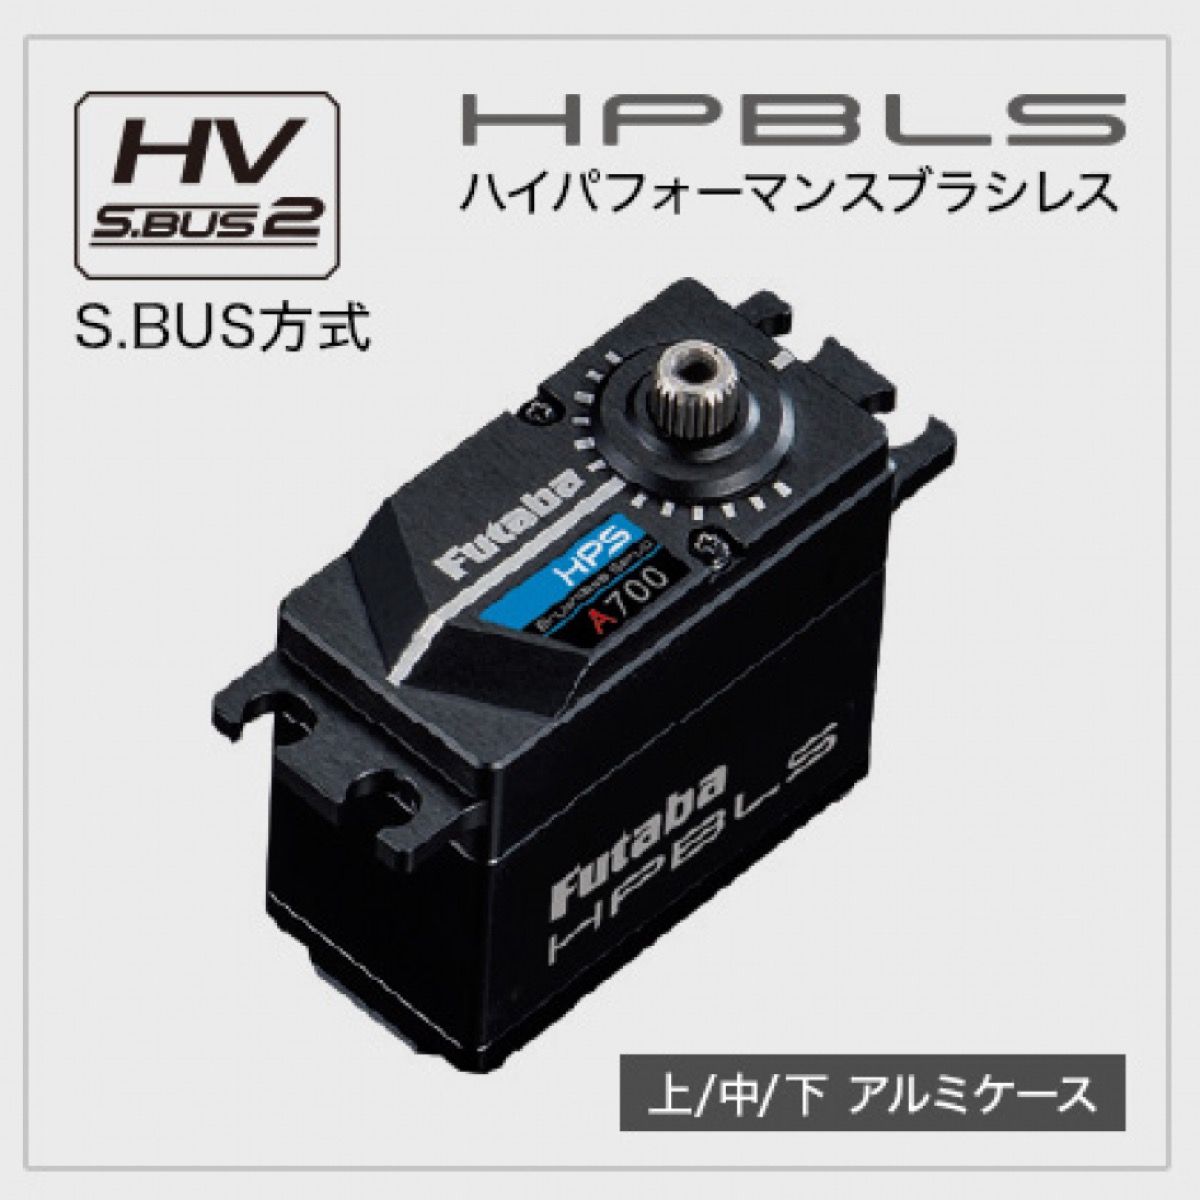 予約中！】 フタバ HPS CB500 サーボ SR Futaba 双葉 新座店:6432円 ブランド:フタバ ホビー用ラジコン